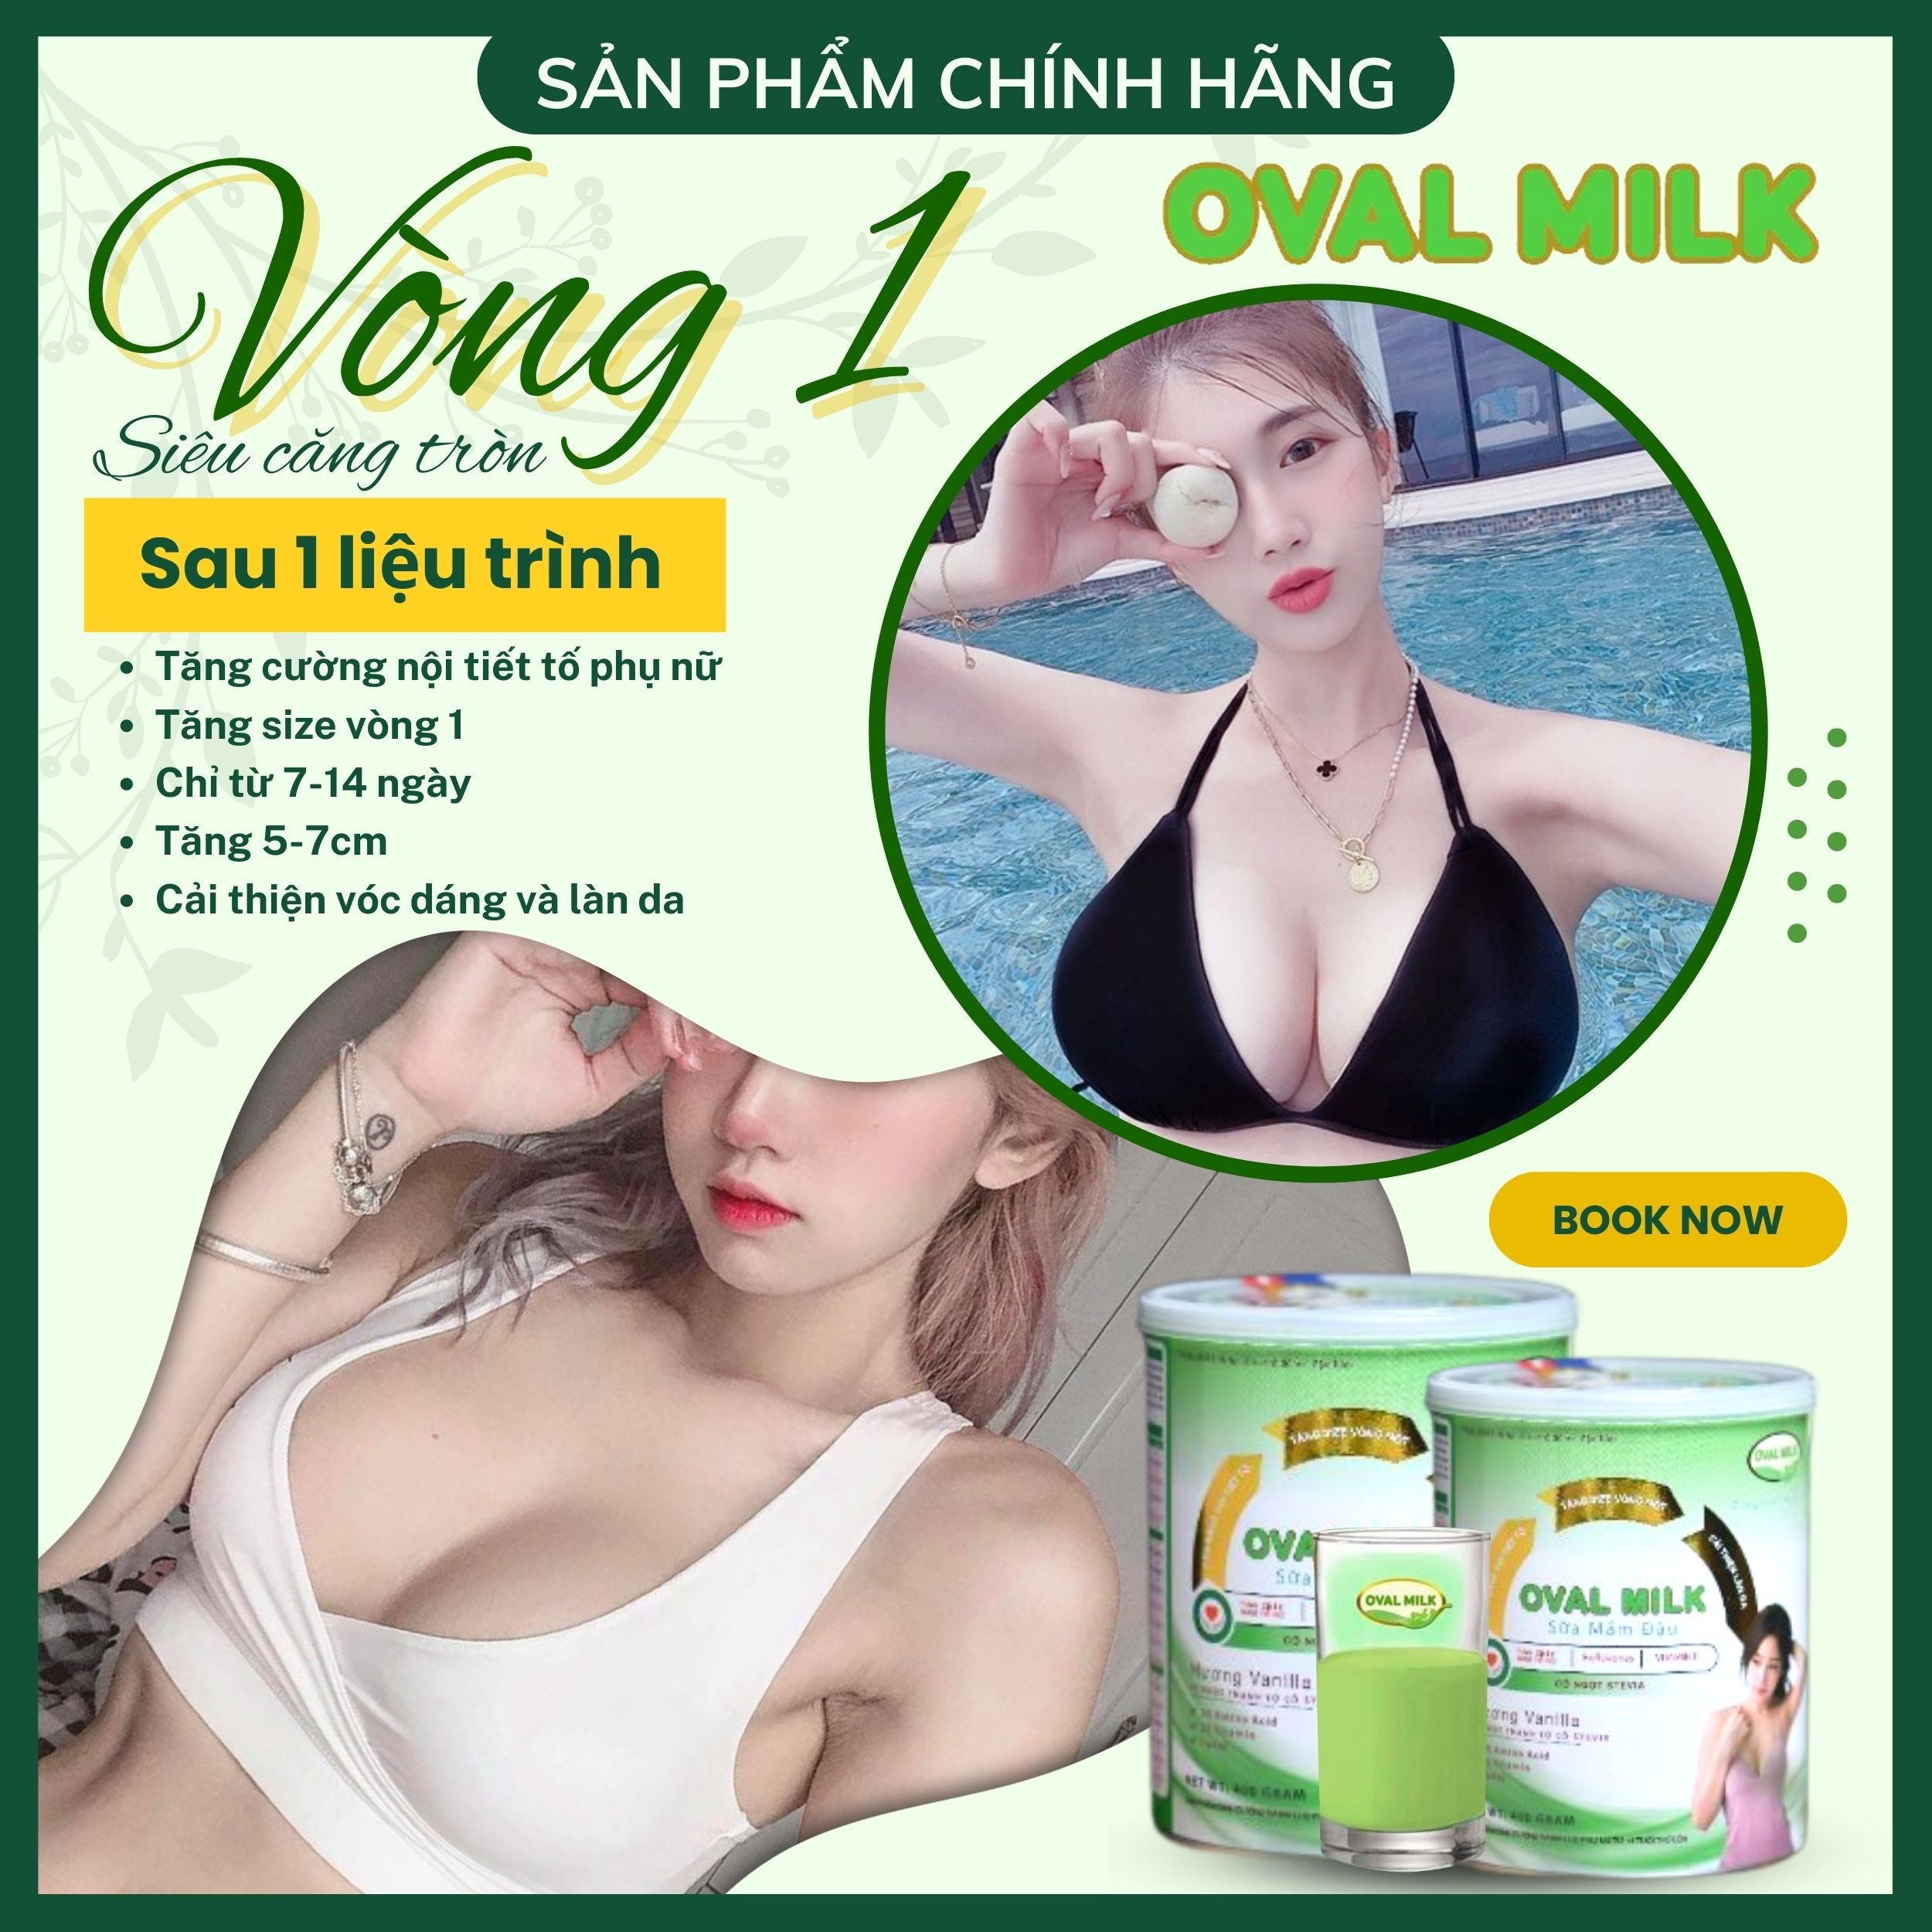 Oval Milk Nở Ngực Nhanh [ 6 - 7 CM ] Tăng Vòng 1 To Tròn Săn Chắc - Tăng Kích Thước Vòng 1 - Nở Ngực Hiệu Quả